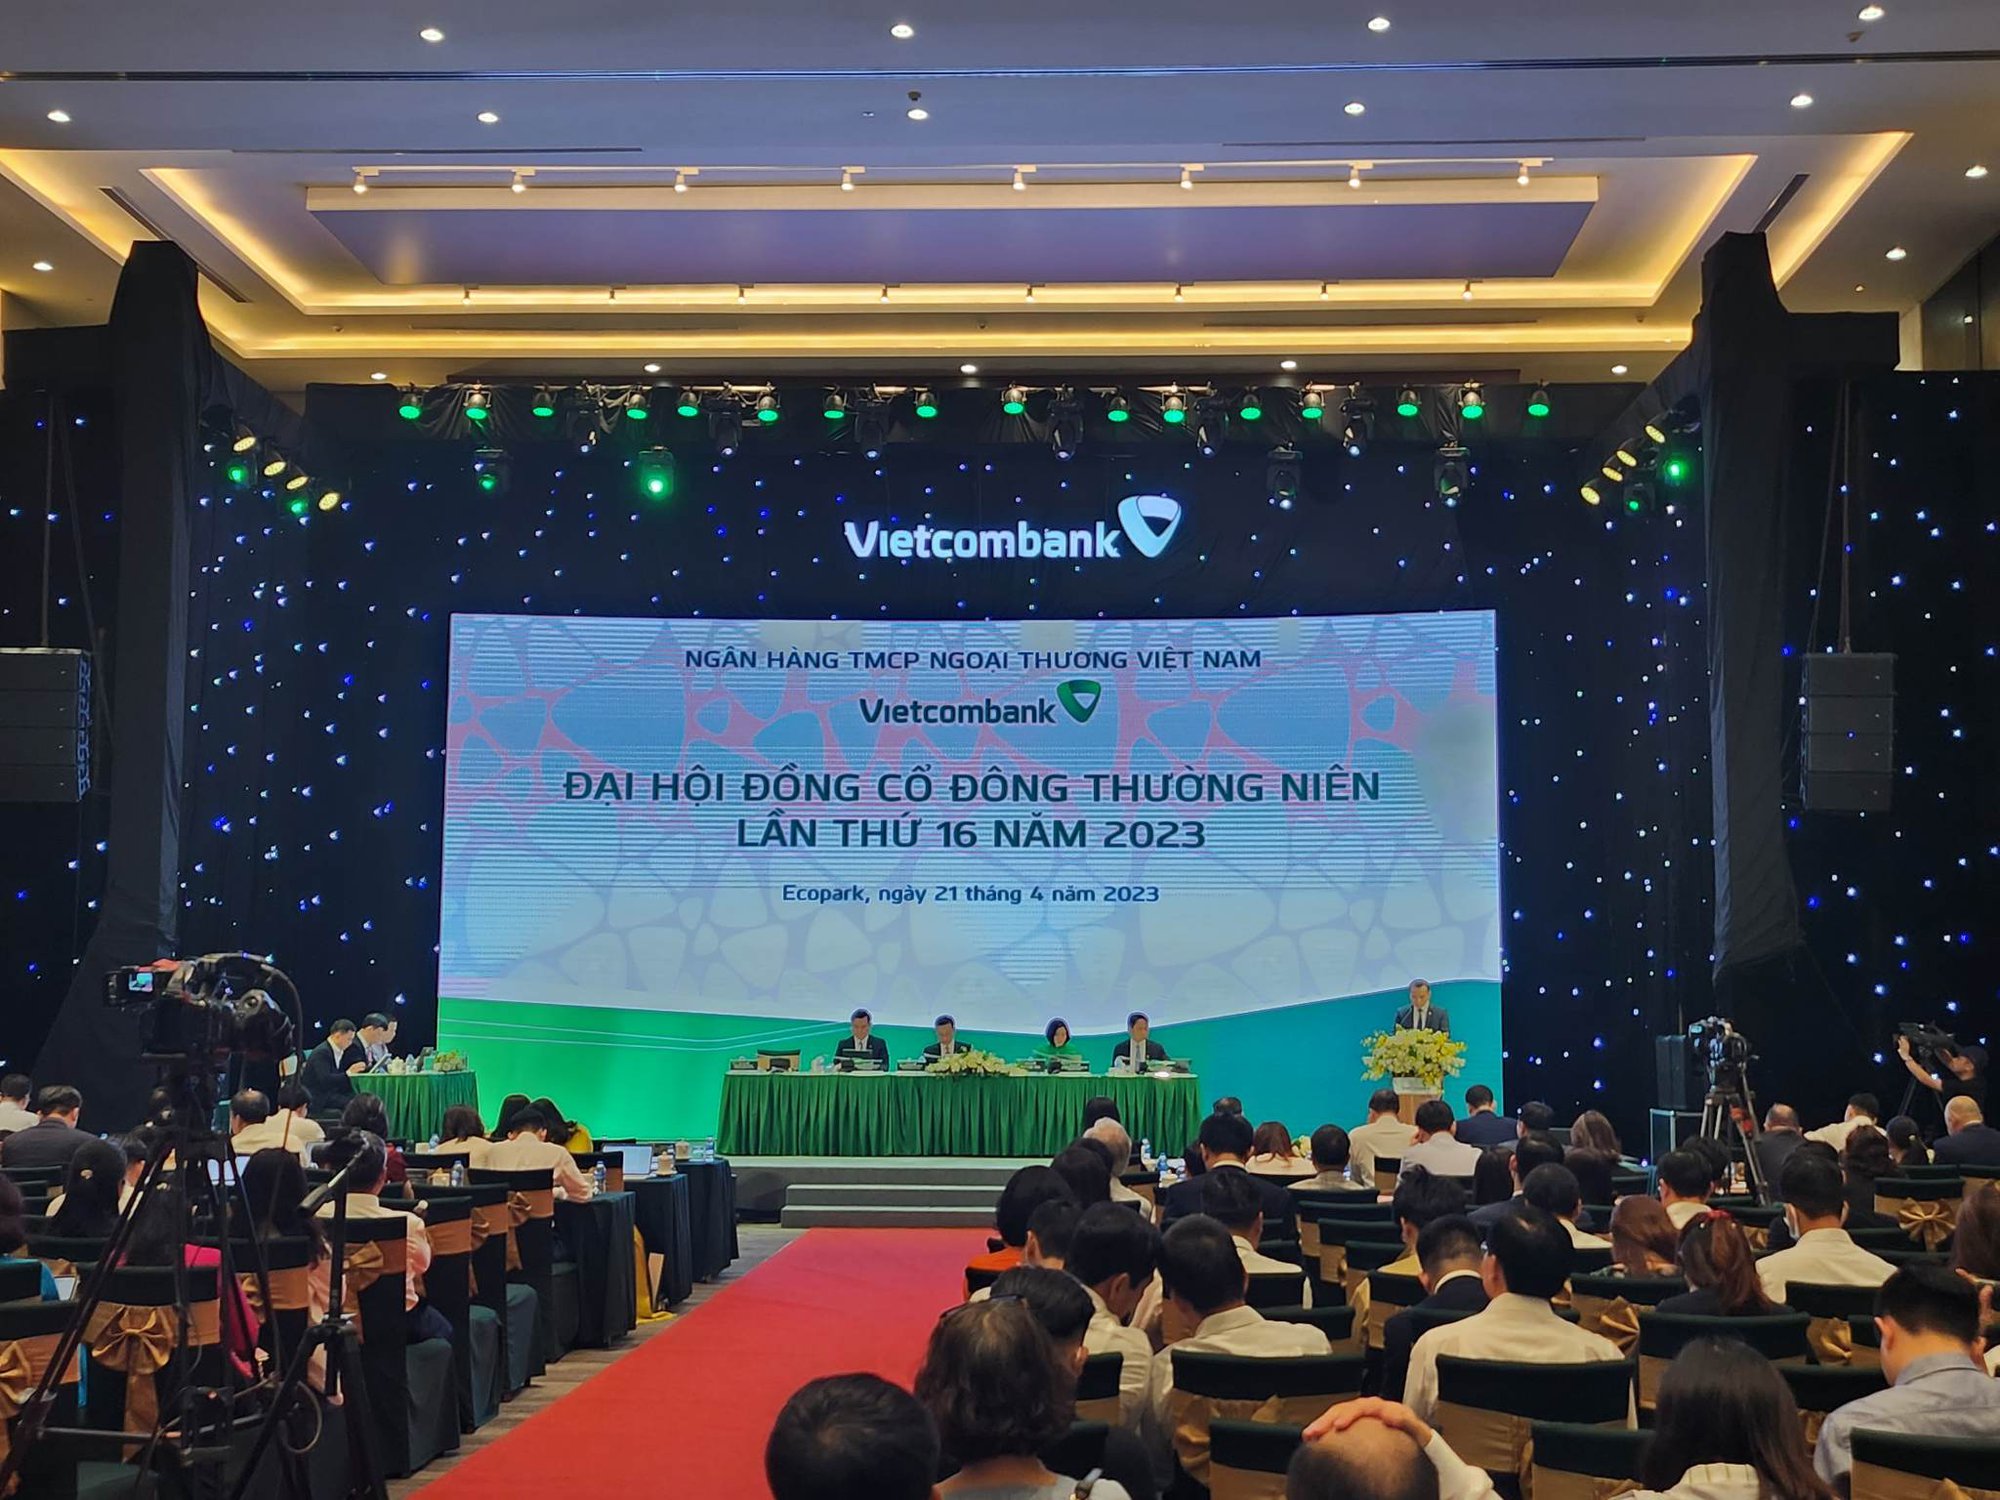 ĐHĐCĐ Vietcombank: Trình kế hoạch lợi nhuận 43.000 tỷ đồng, lộ diện người dự kiến thay thế ông Trương Gia Bình - Ảnh 2.